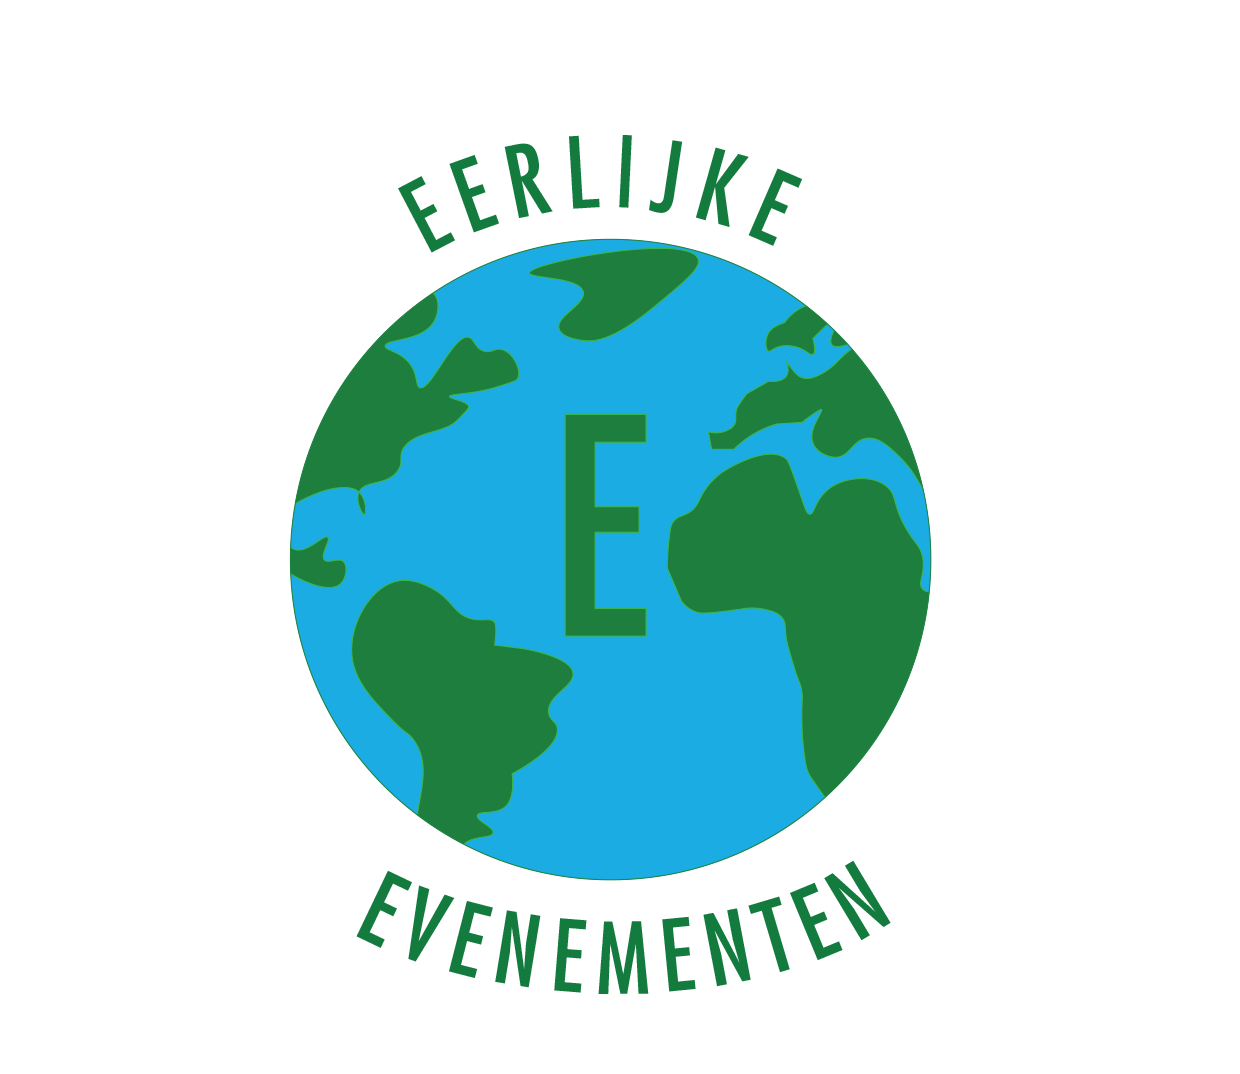 Logo Eerlijke evenementen